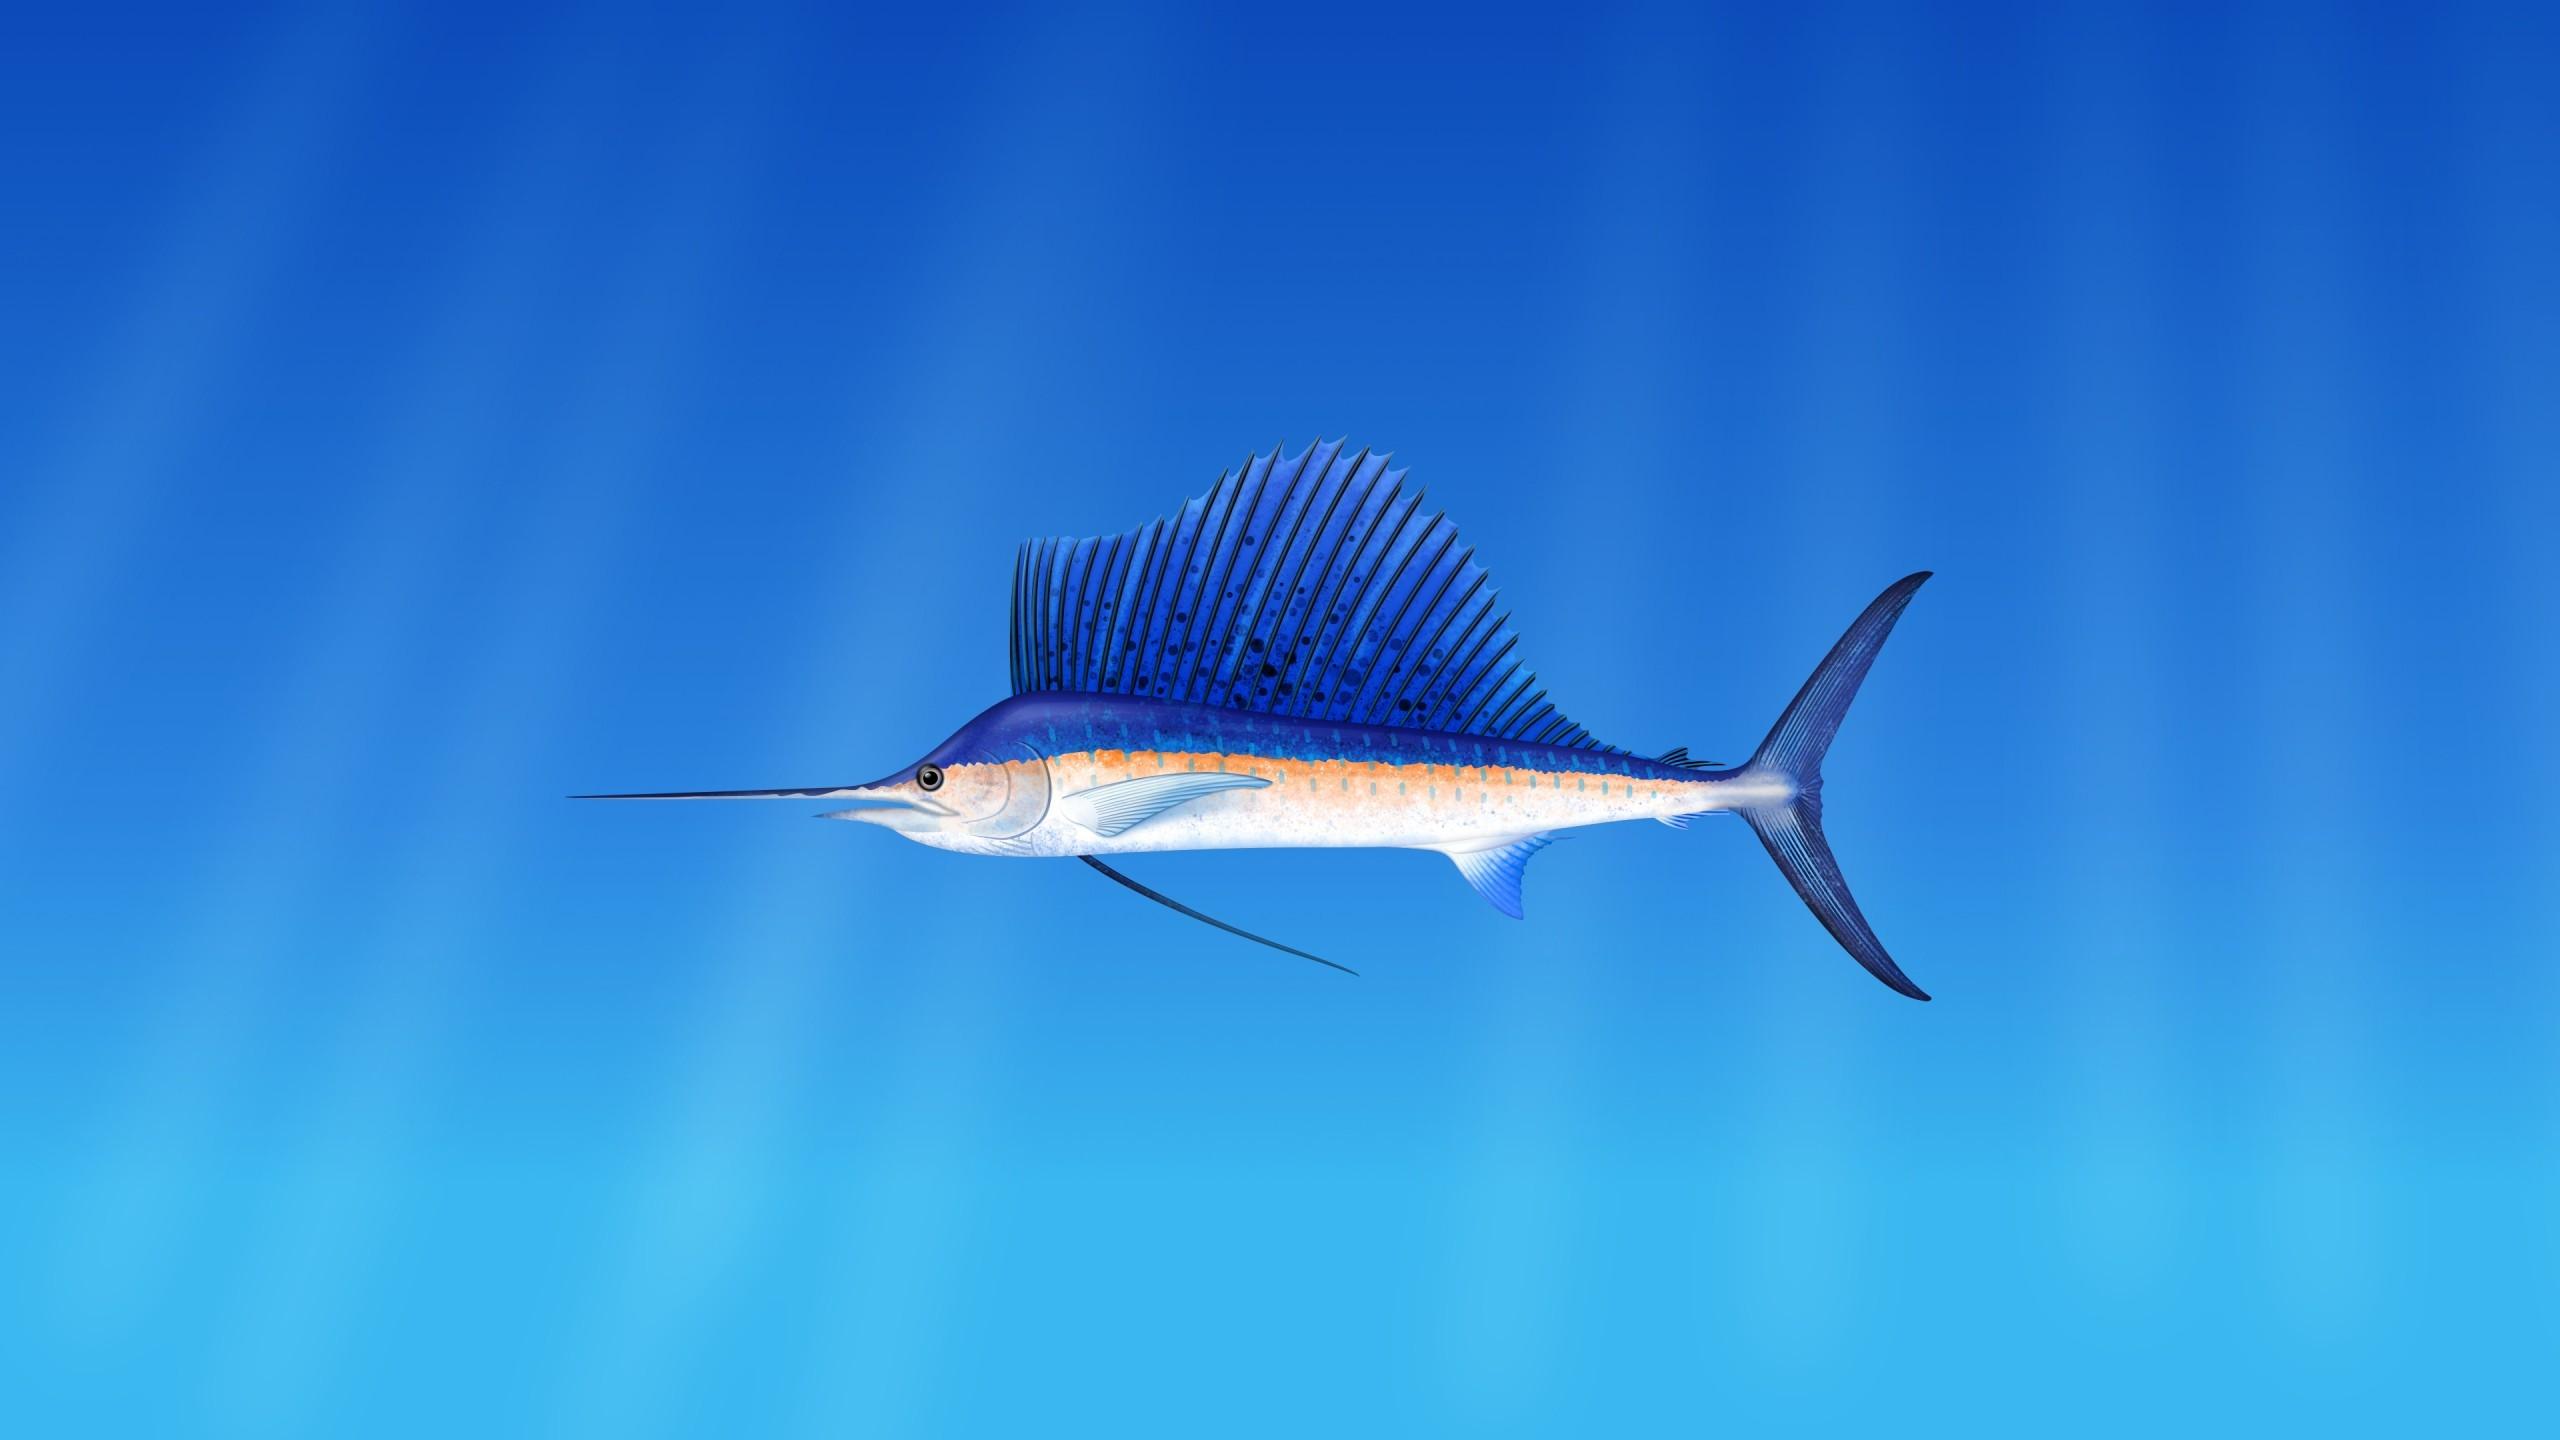 Download 2560x1440 Swordfish, Underwater Wallpaper for iMac